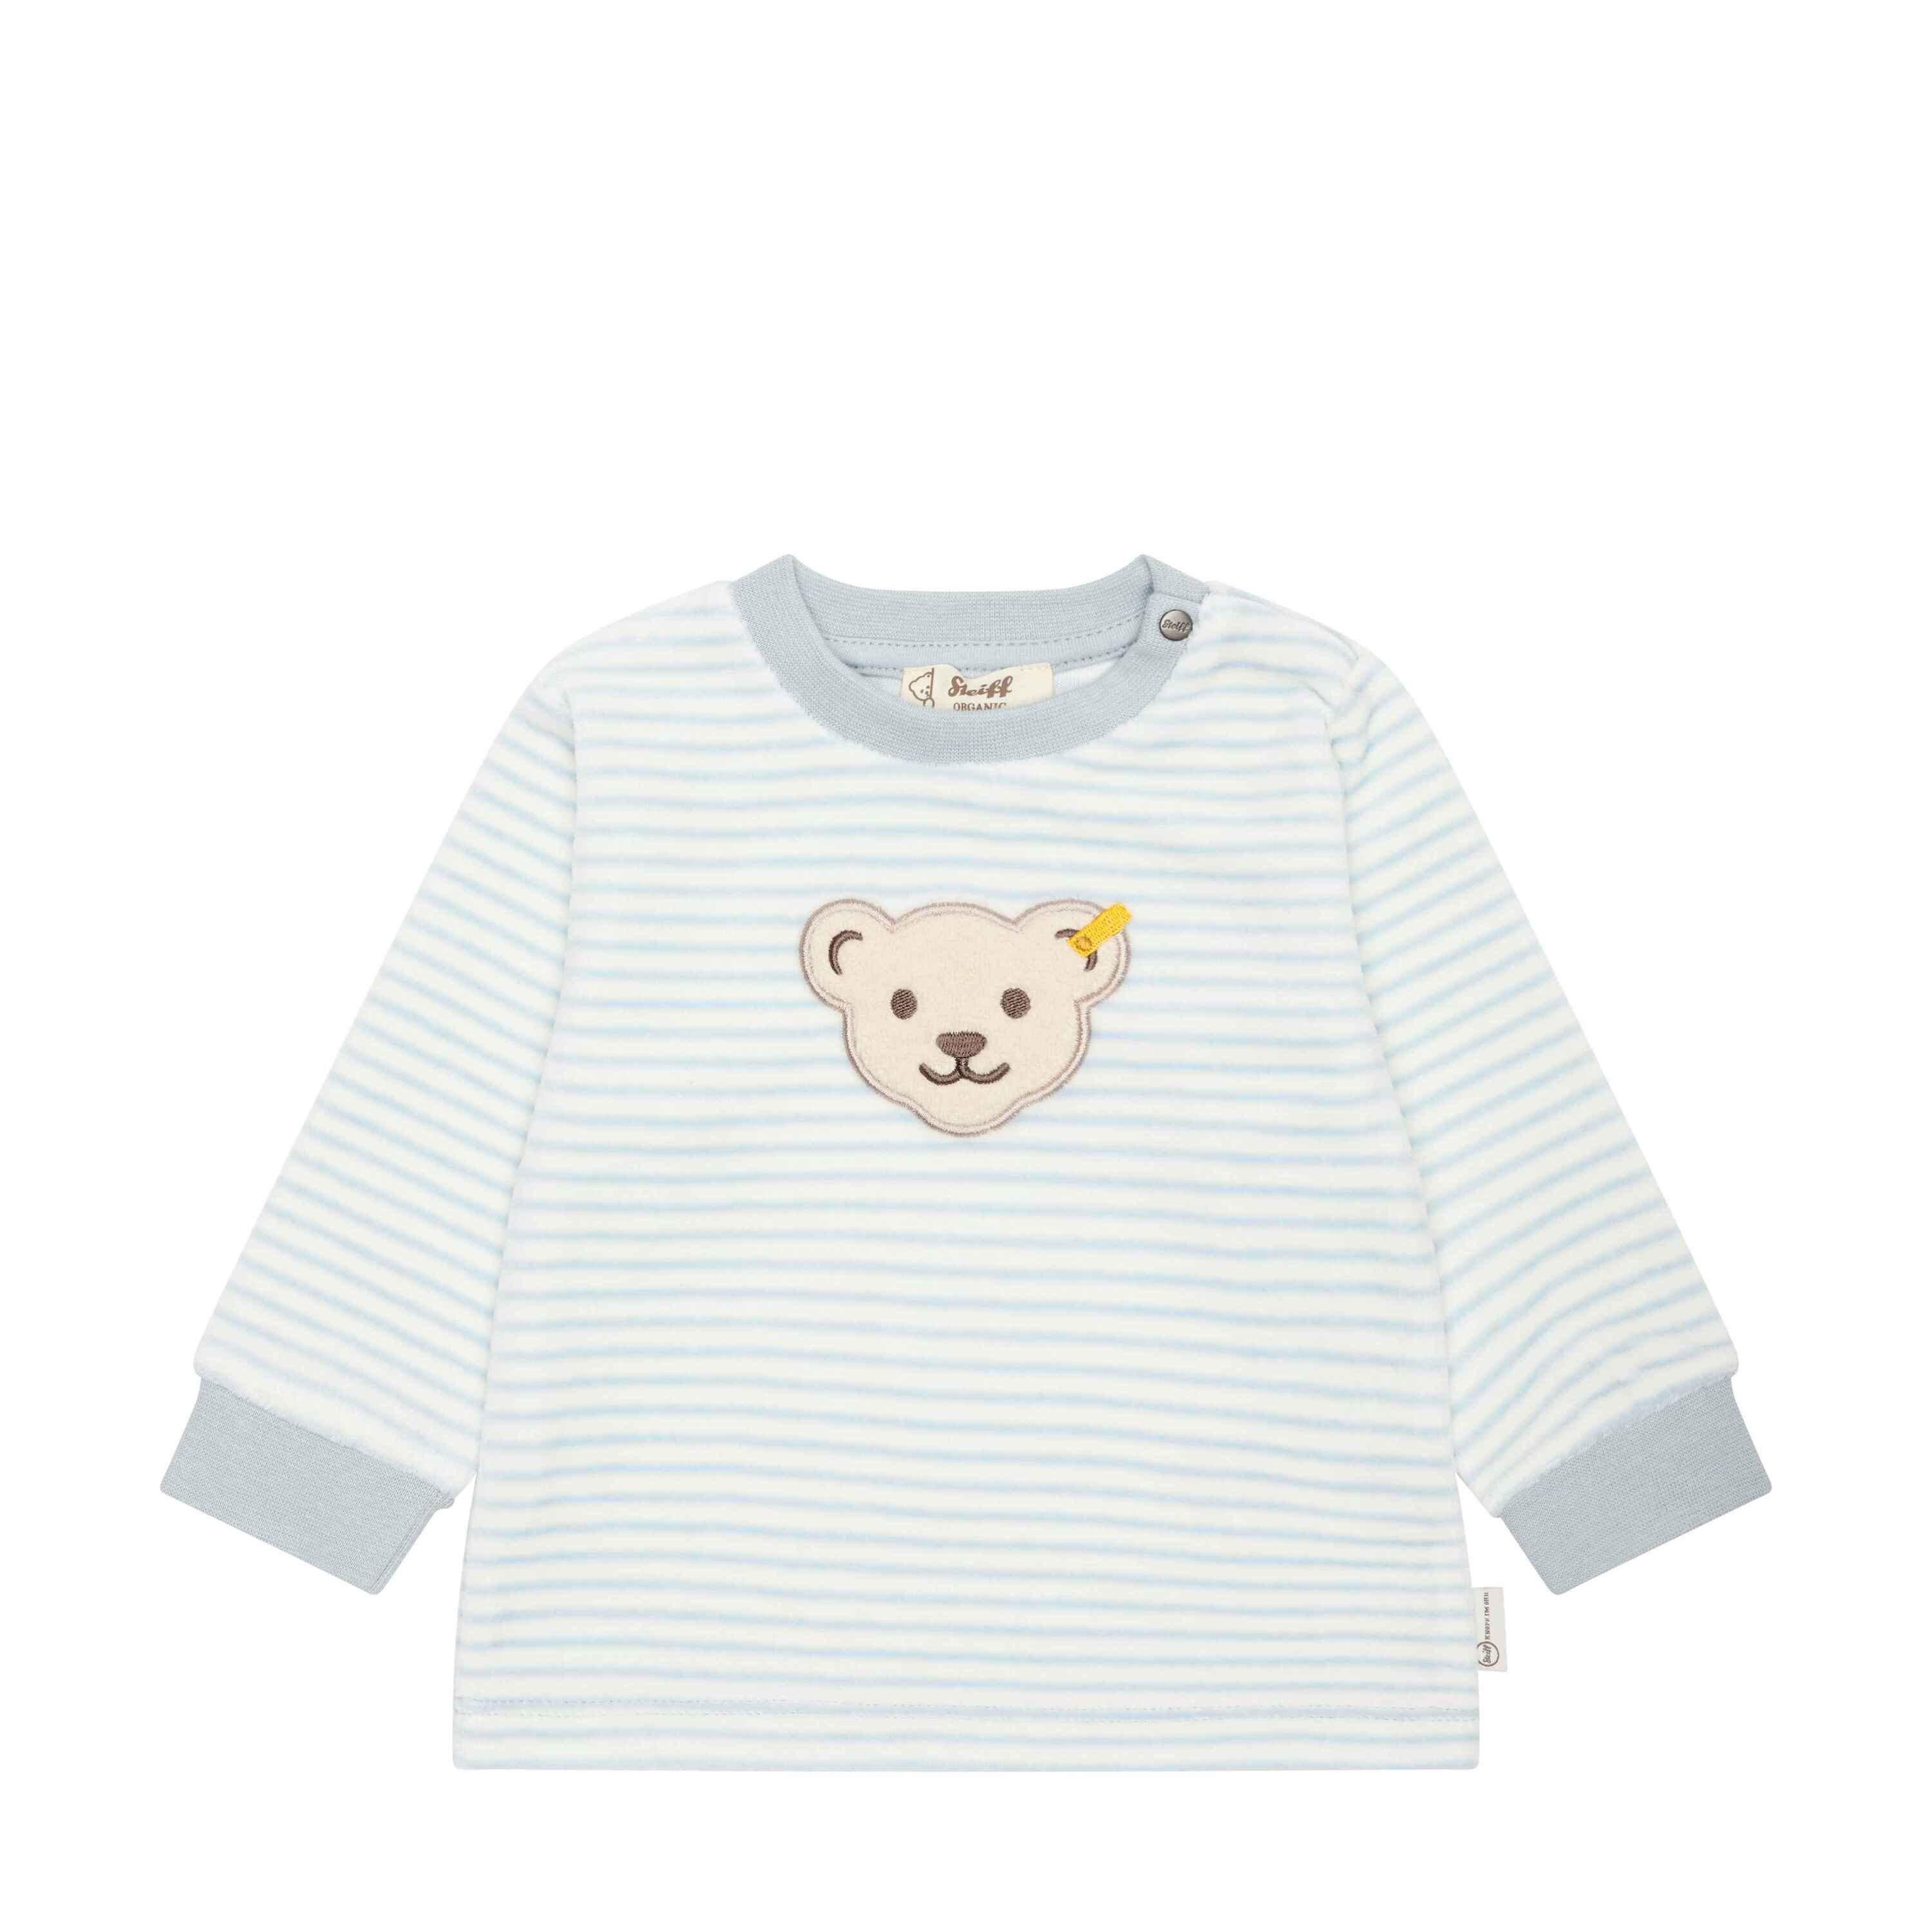 Steiff Sweatshirt Sweatshirt mit celestial GOTS Baby Wellness lässig Teddykopf blue